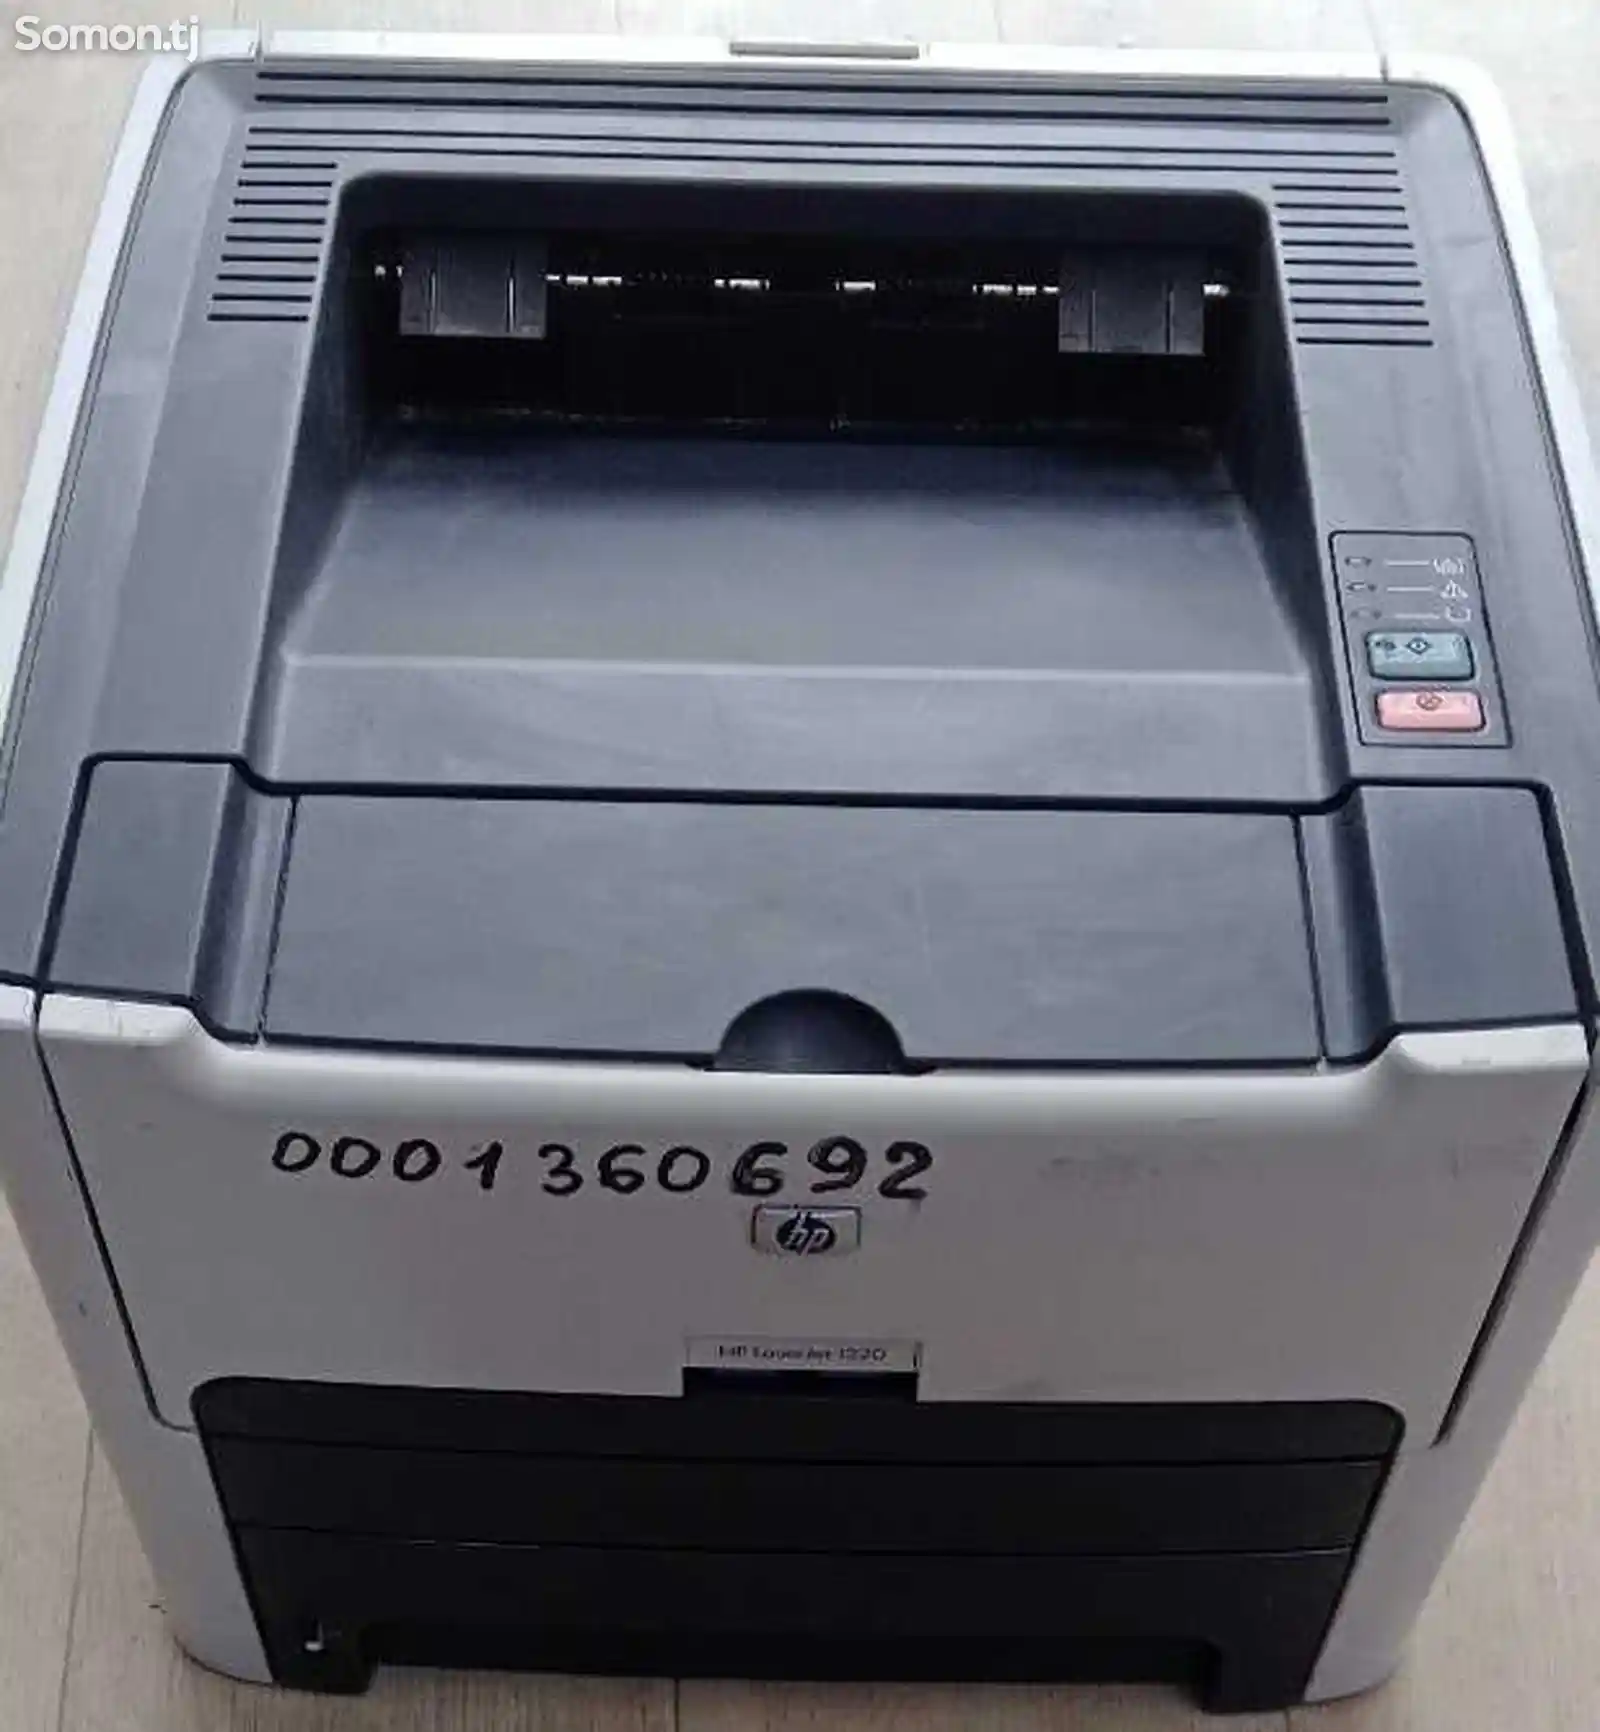 Принтер HP Laserjet 1320-3